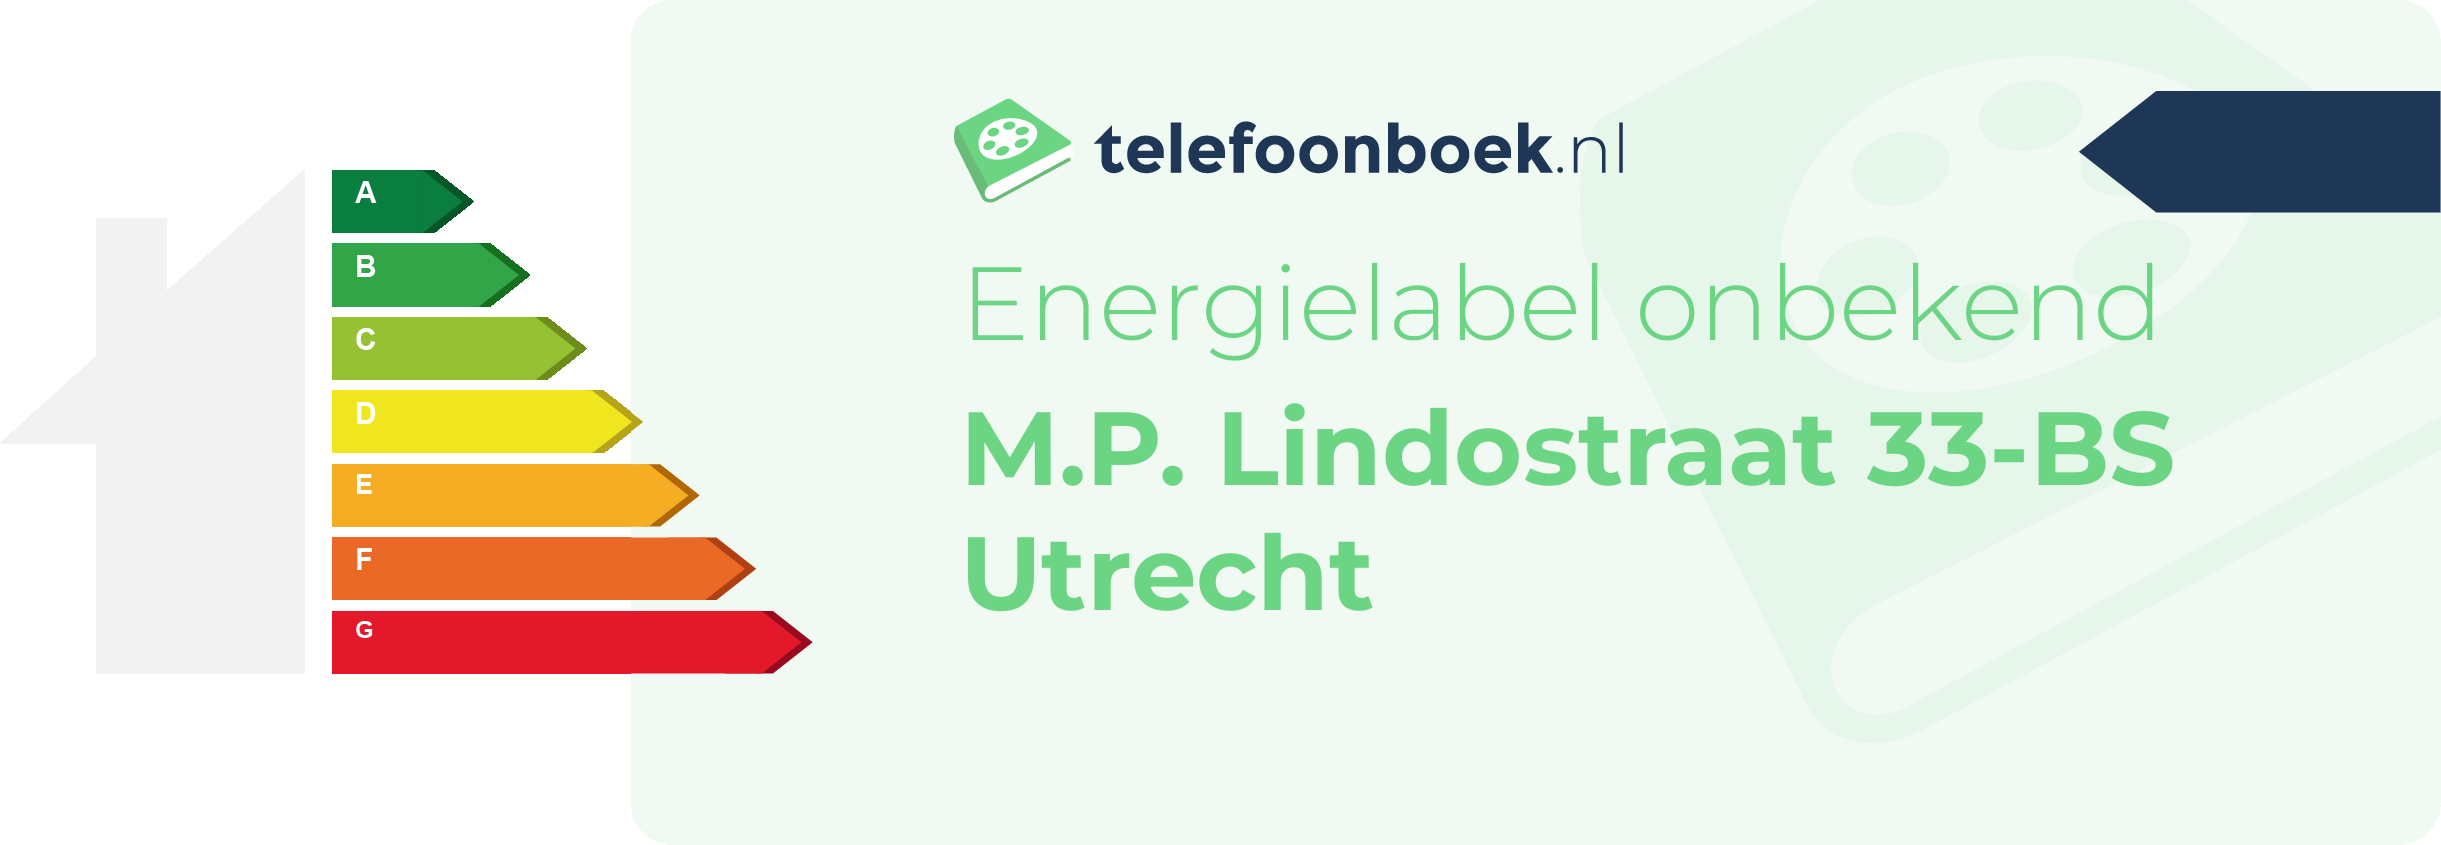 Energielabel M.P. Lindostraat 33-BS Utrecht